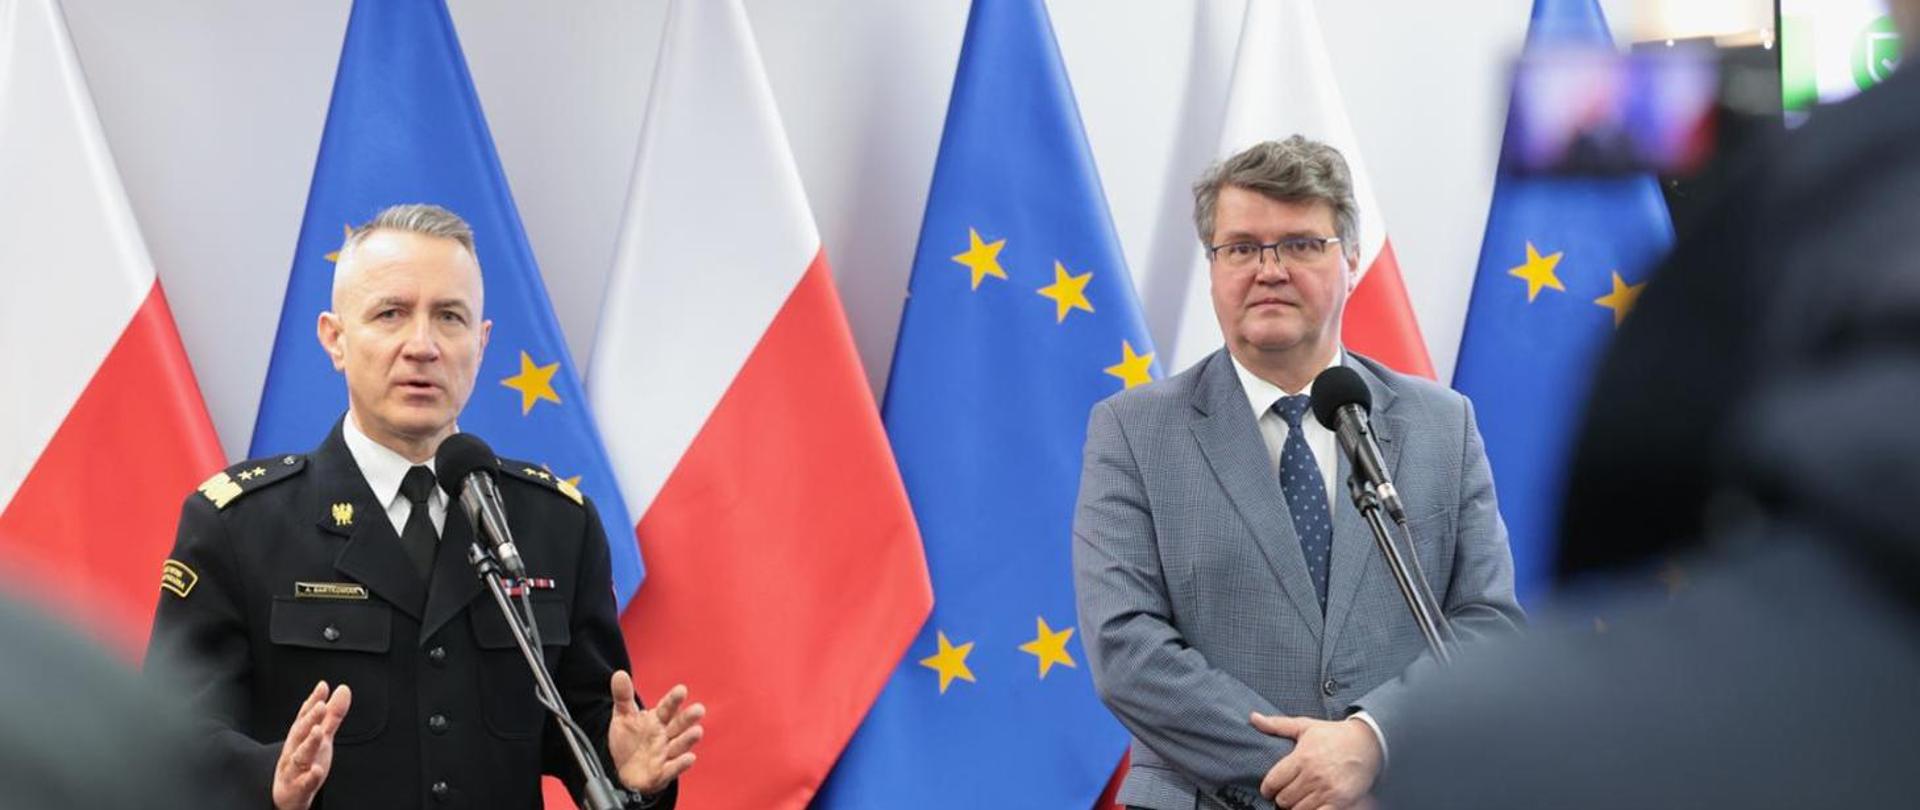 Na tle rzędu flag polskich i UE, przy mikrofonach stoją po lewej Komendant Główny PSP gen. brygadier Andrzej Bartkowiak, a po prawej wiceminister Maciej Wąsik udzielają odpowiedzi podczas konferencji. 